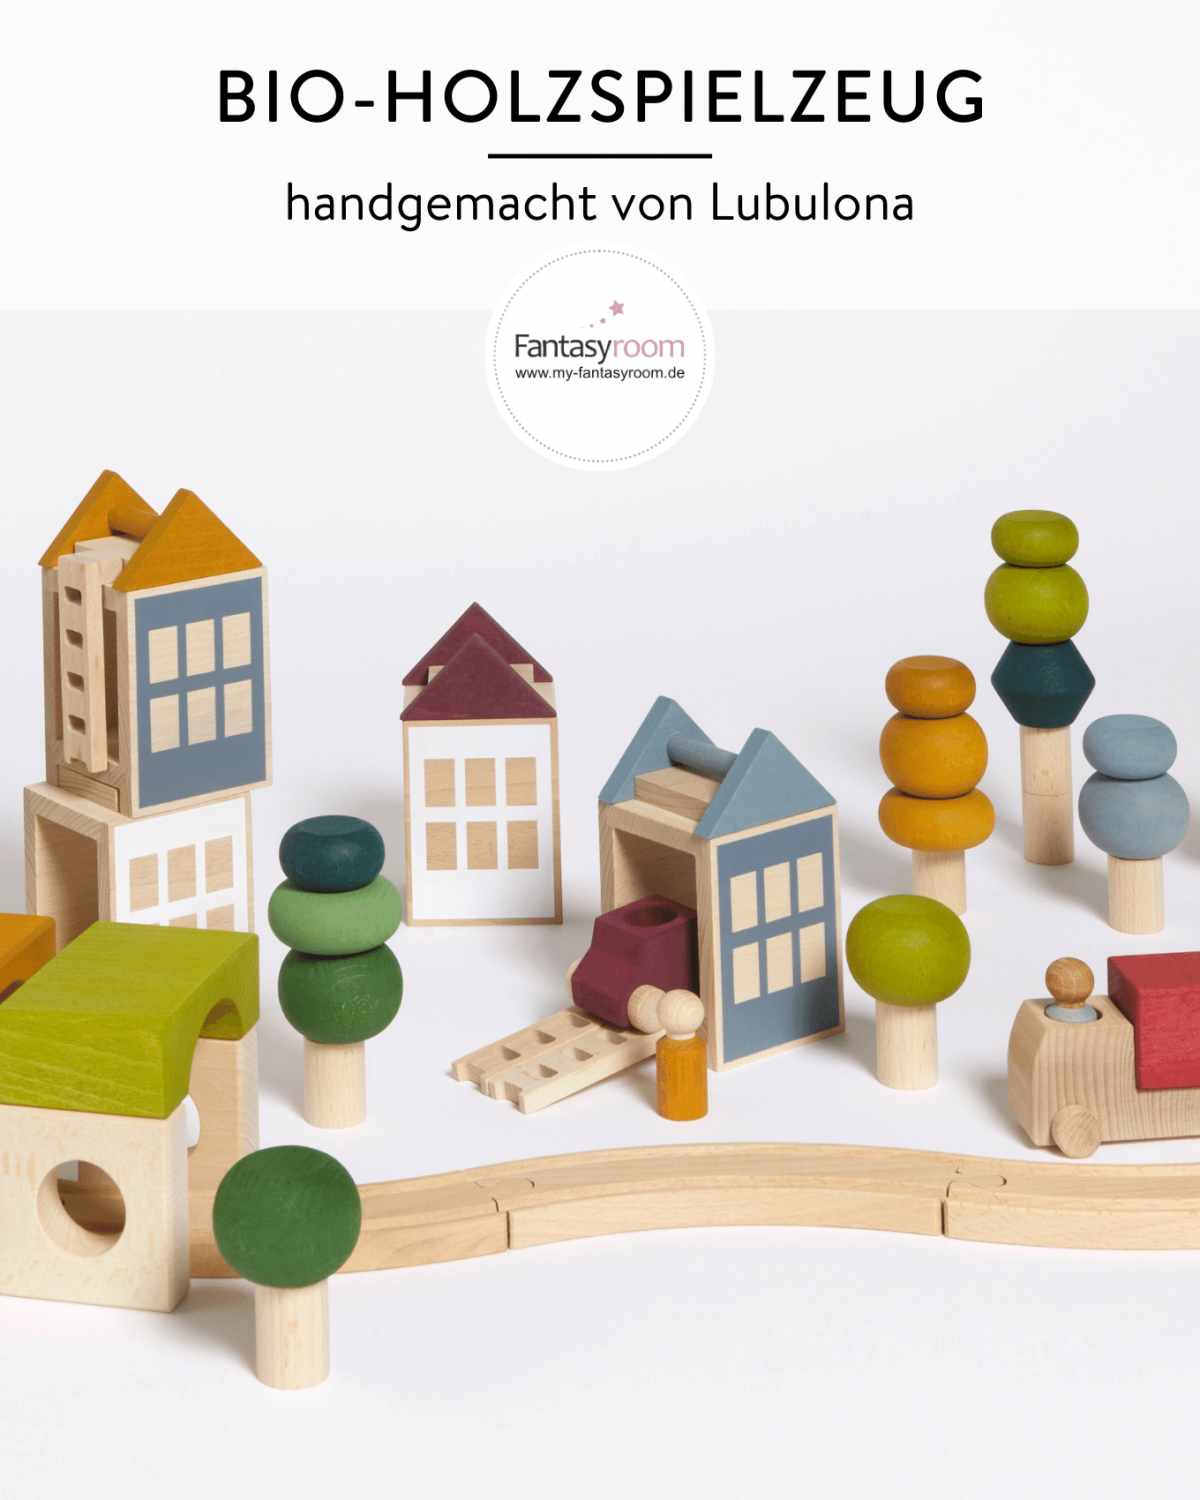 Handgemachtes Bio-Holzspielzeug von Lubulona